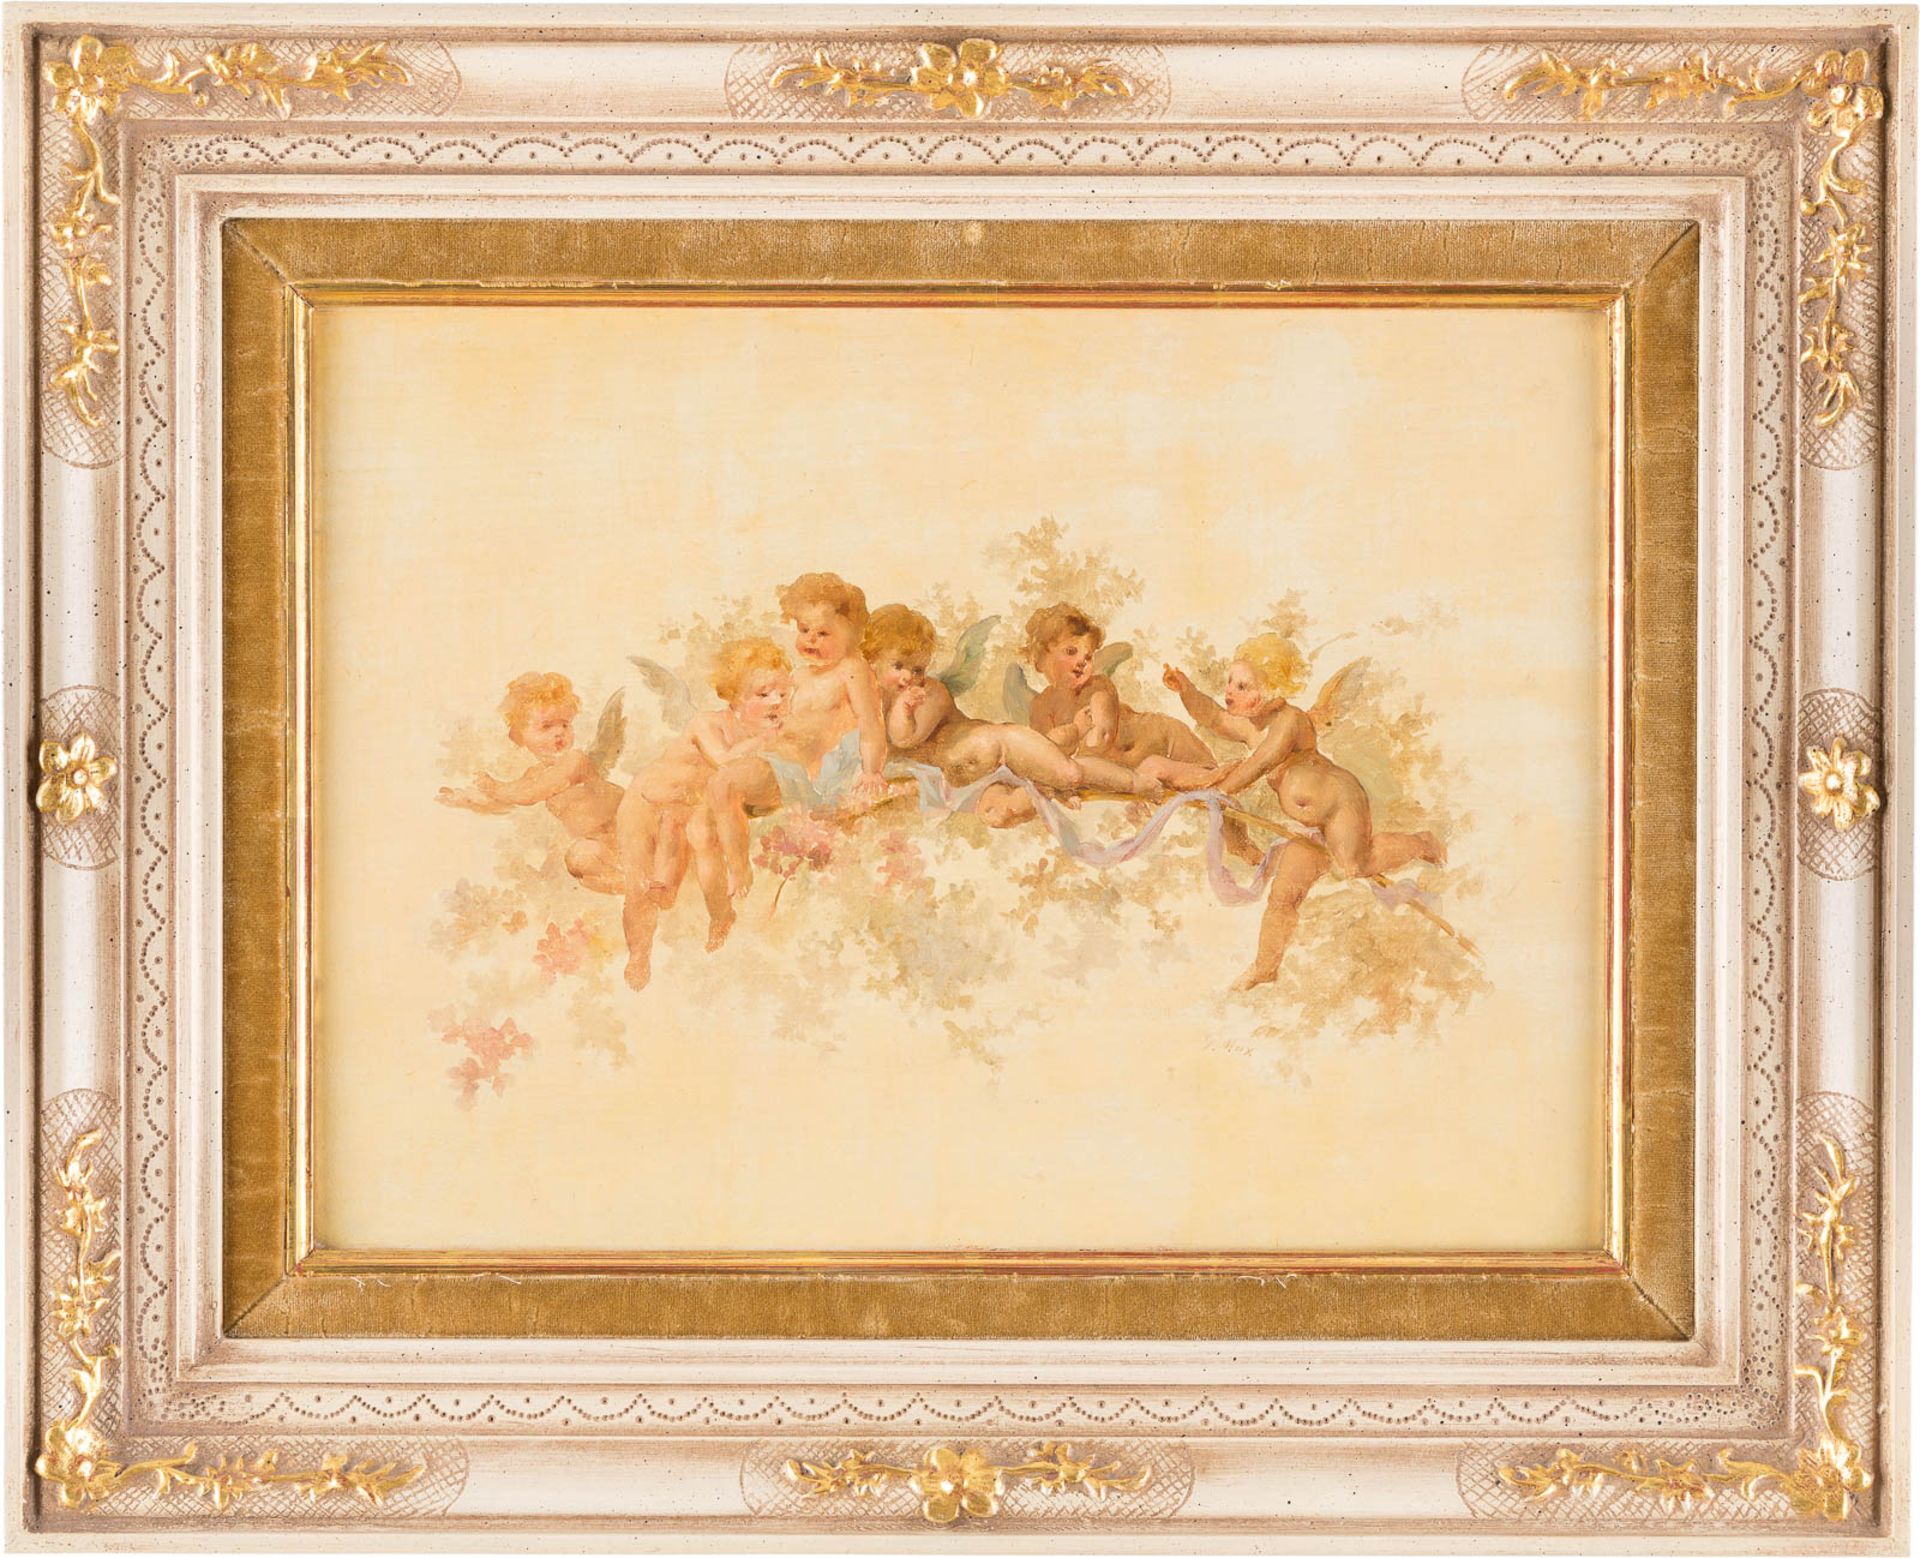 GABRIEL CORNELIUS VON MAX1840 Prag - 1915 MünchenPuttostudie Öl auf Holz. 27,5 x 38 cm (R. 42,5 x - Bild 2 aus 2